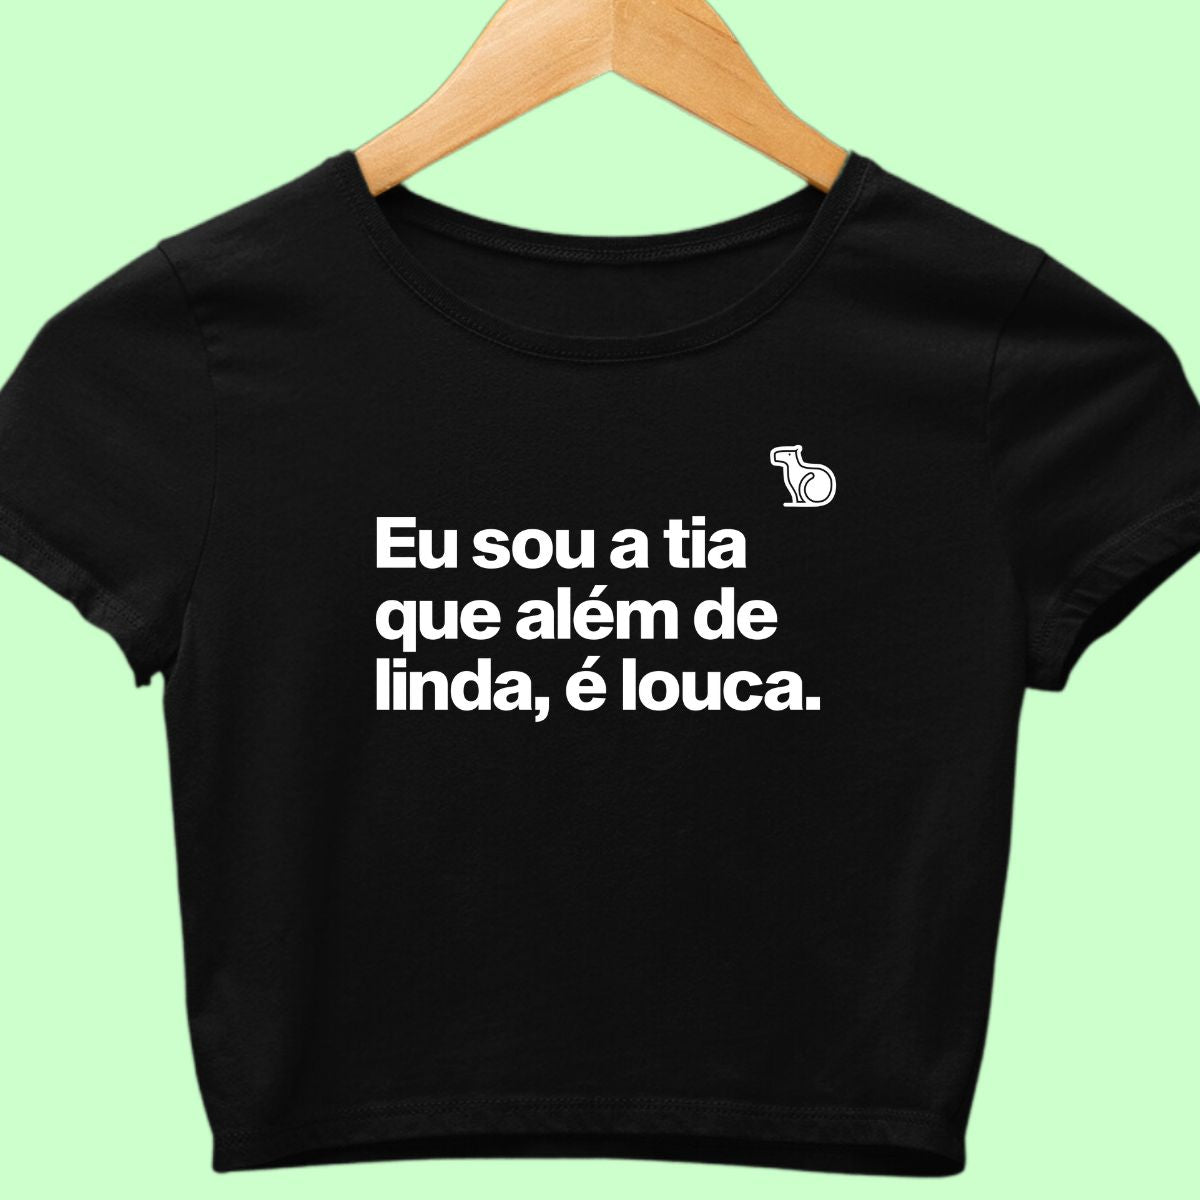 Camiseta cropped com a frase "Sou a tia que além de linda, é louca."  preta.